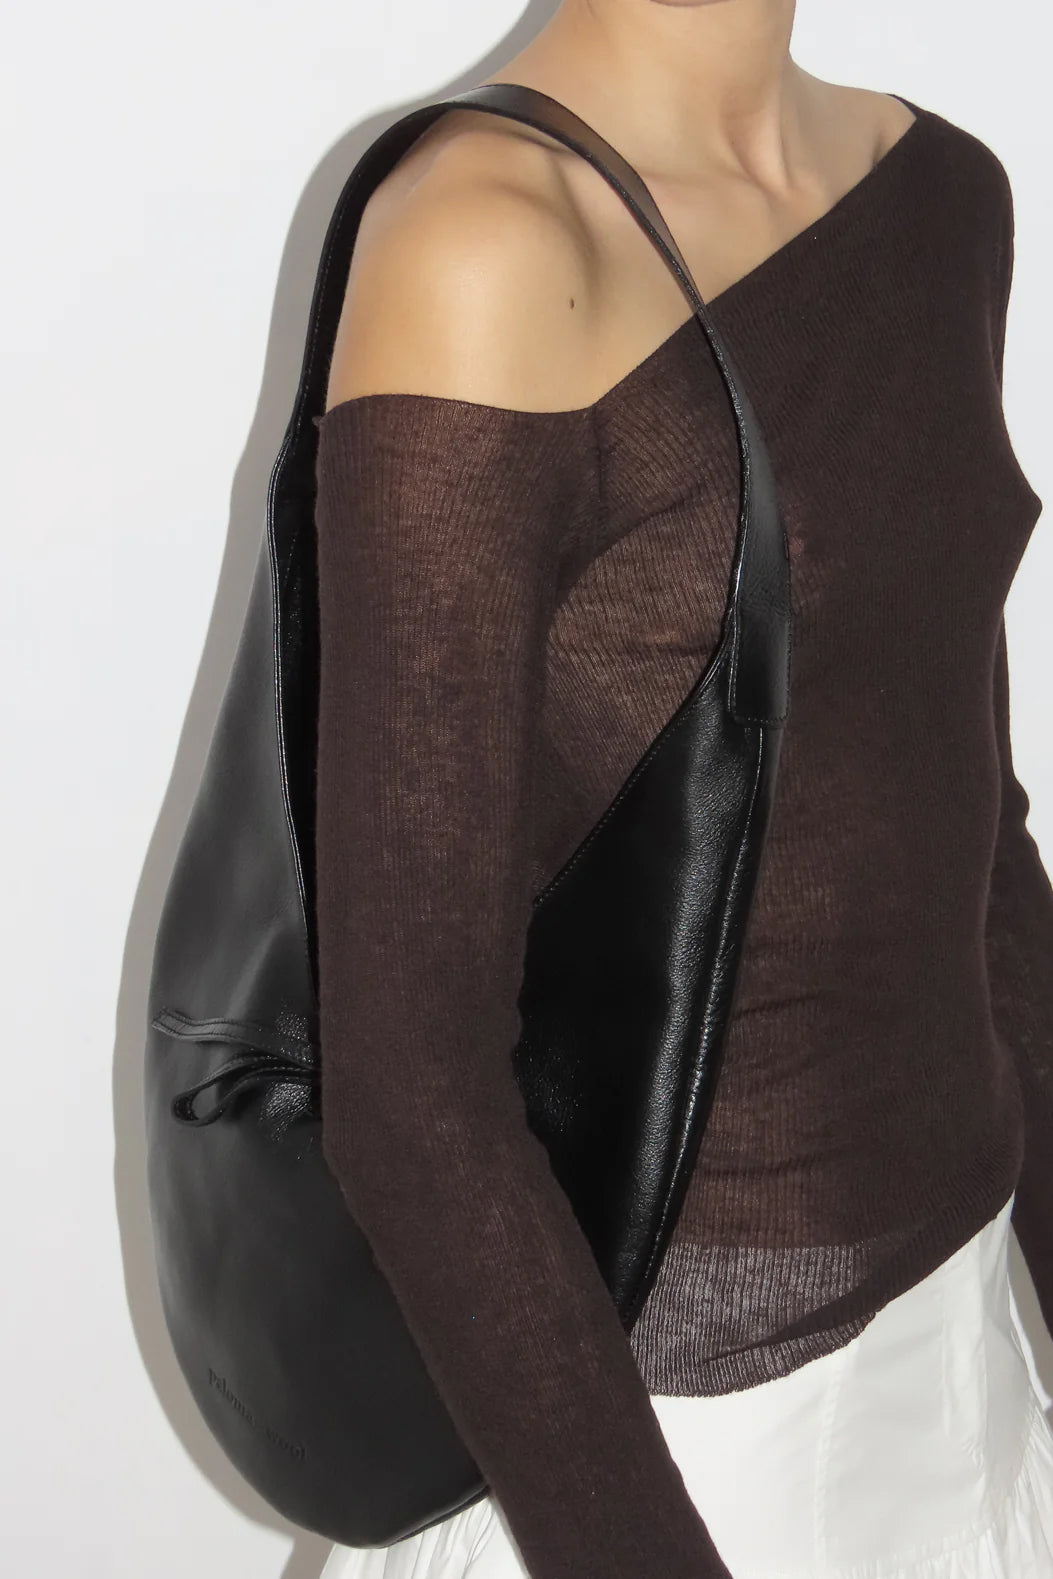 Paloma Wool Lupe Bag // Black